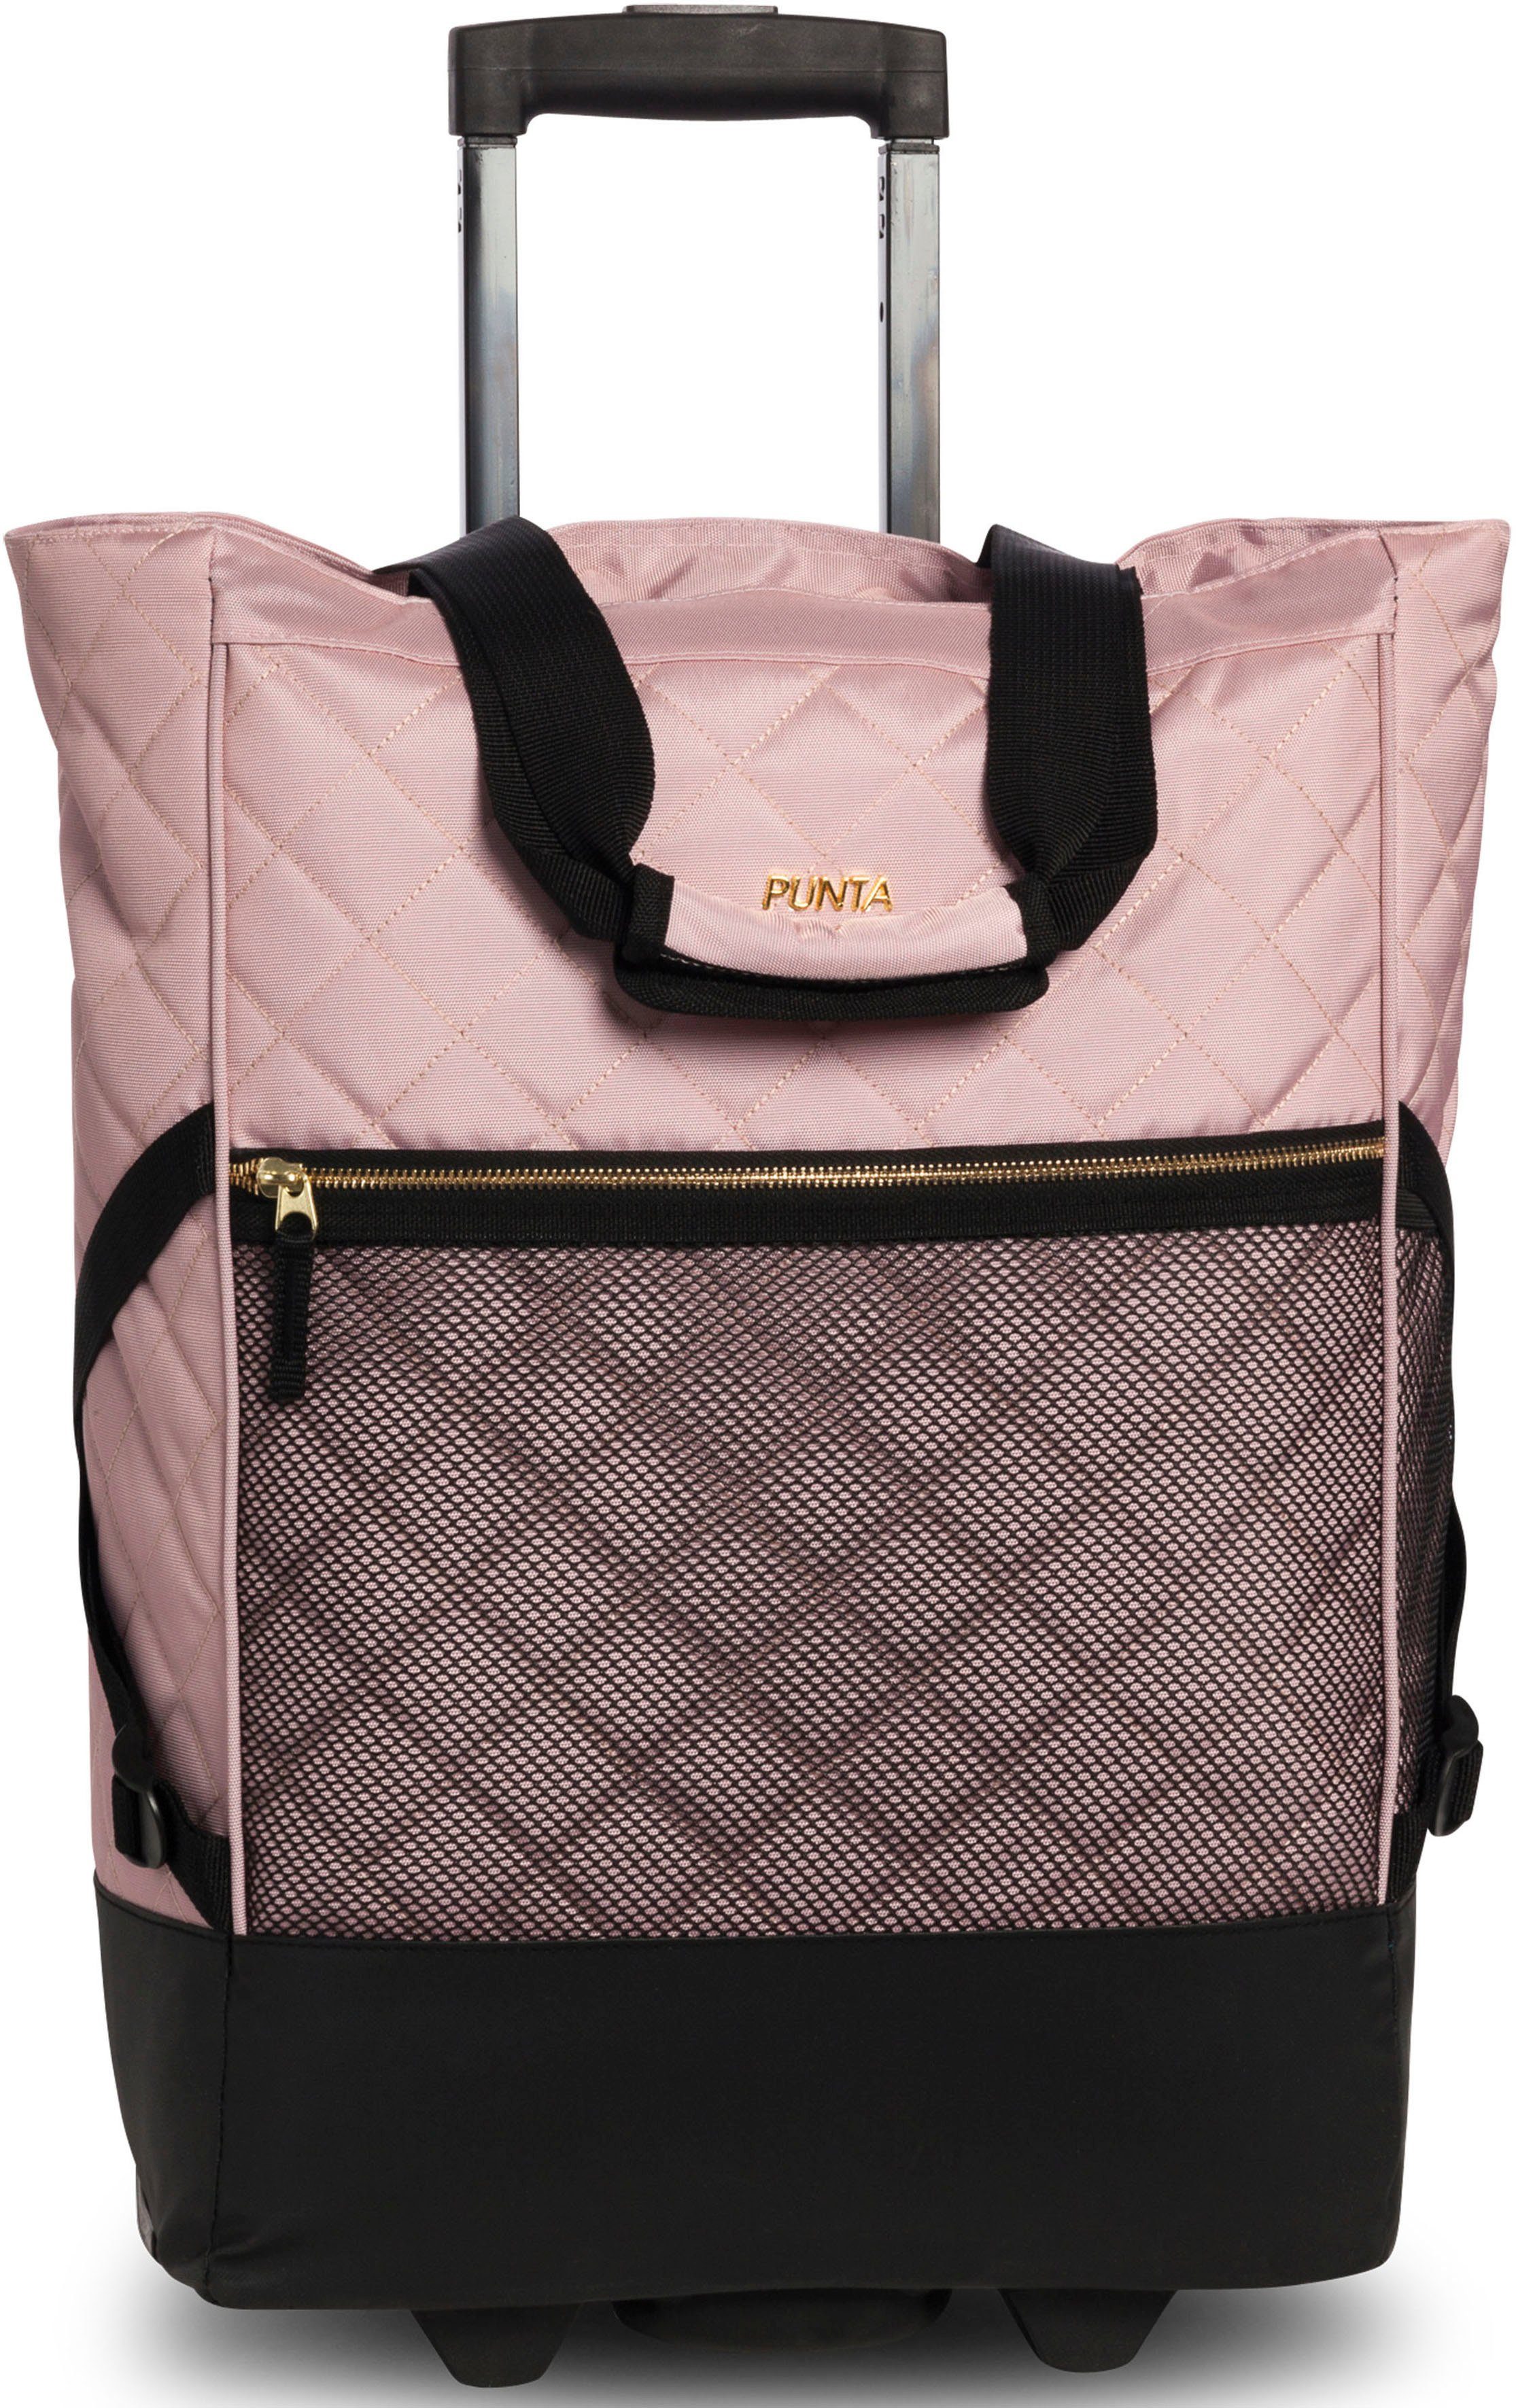 fabrizio® Einkaufstrolley Punta-Wheel-Shopping-Roller, 33 l, edler Look mit abgestepter Oberfläche und Golddetails rosa